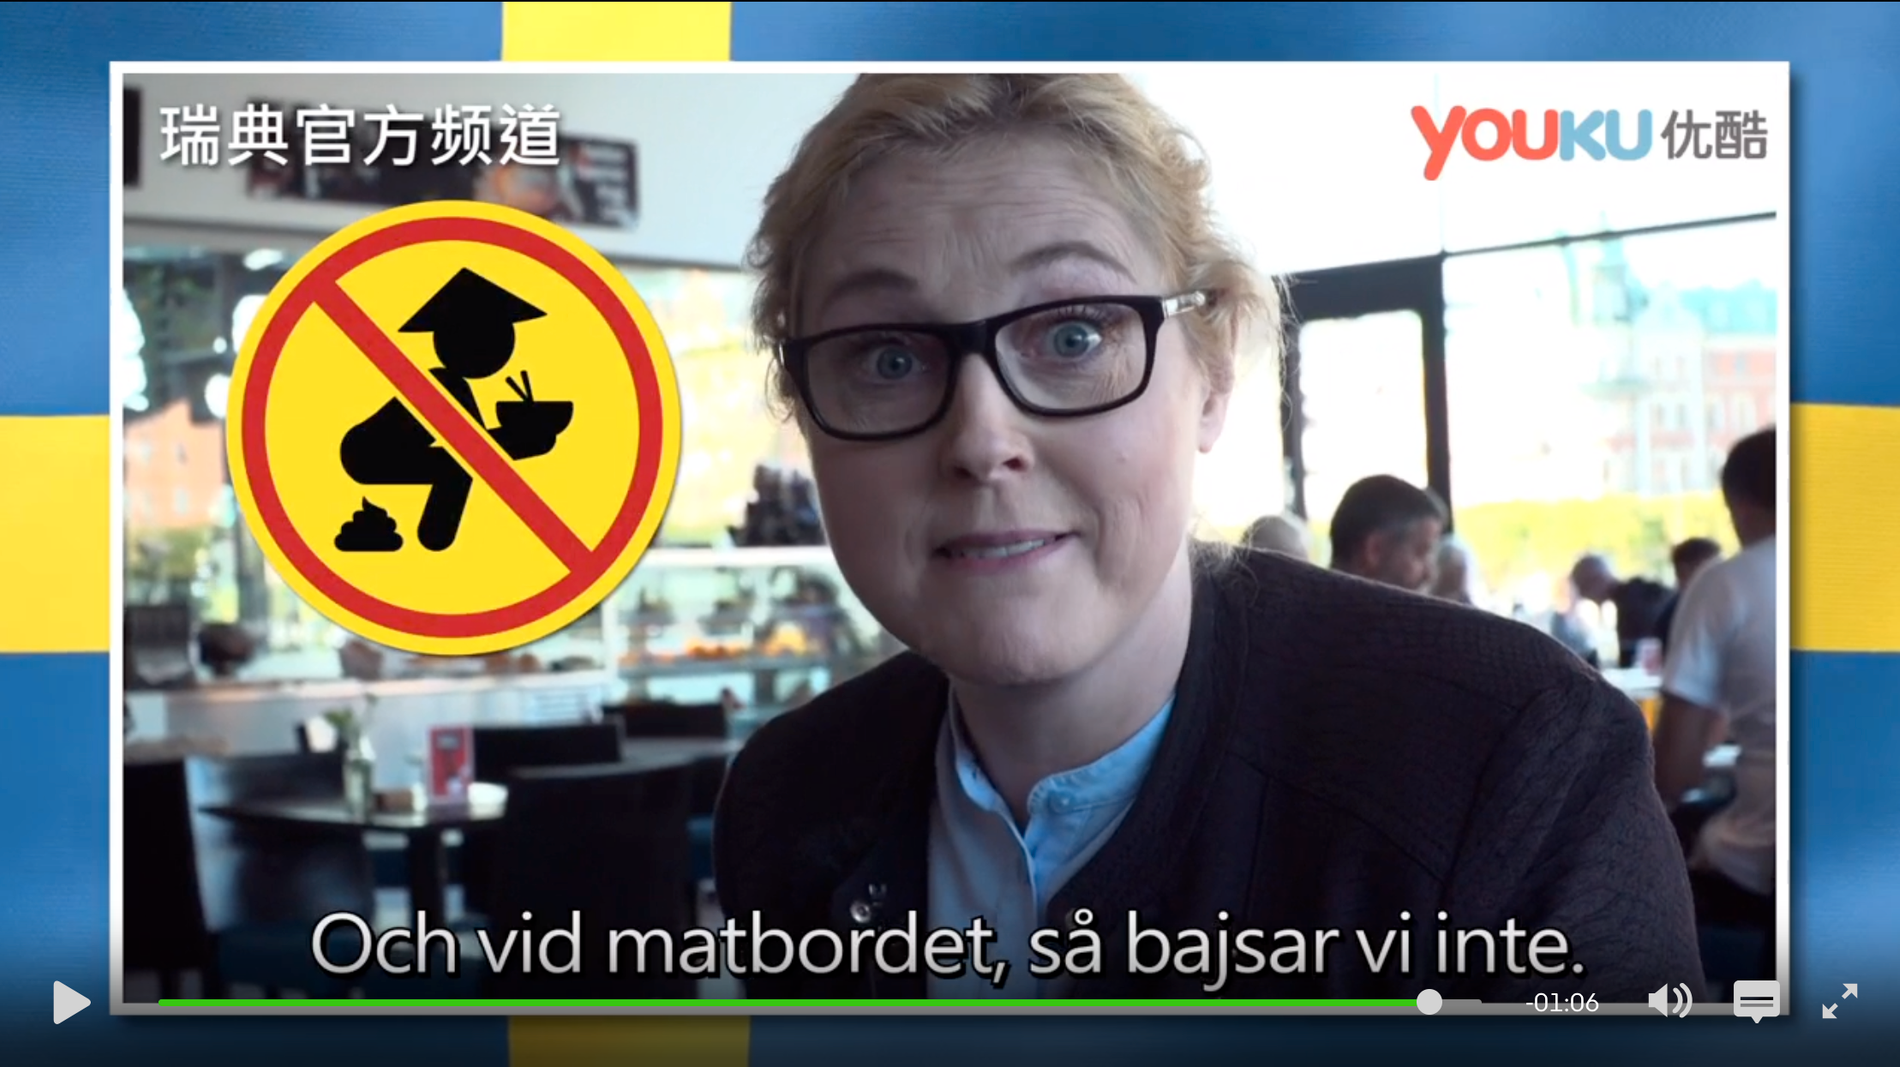 ”Svenska nyheter” skojade bland annat om att man inte ska bajsa vid matbordet. 